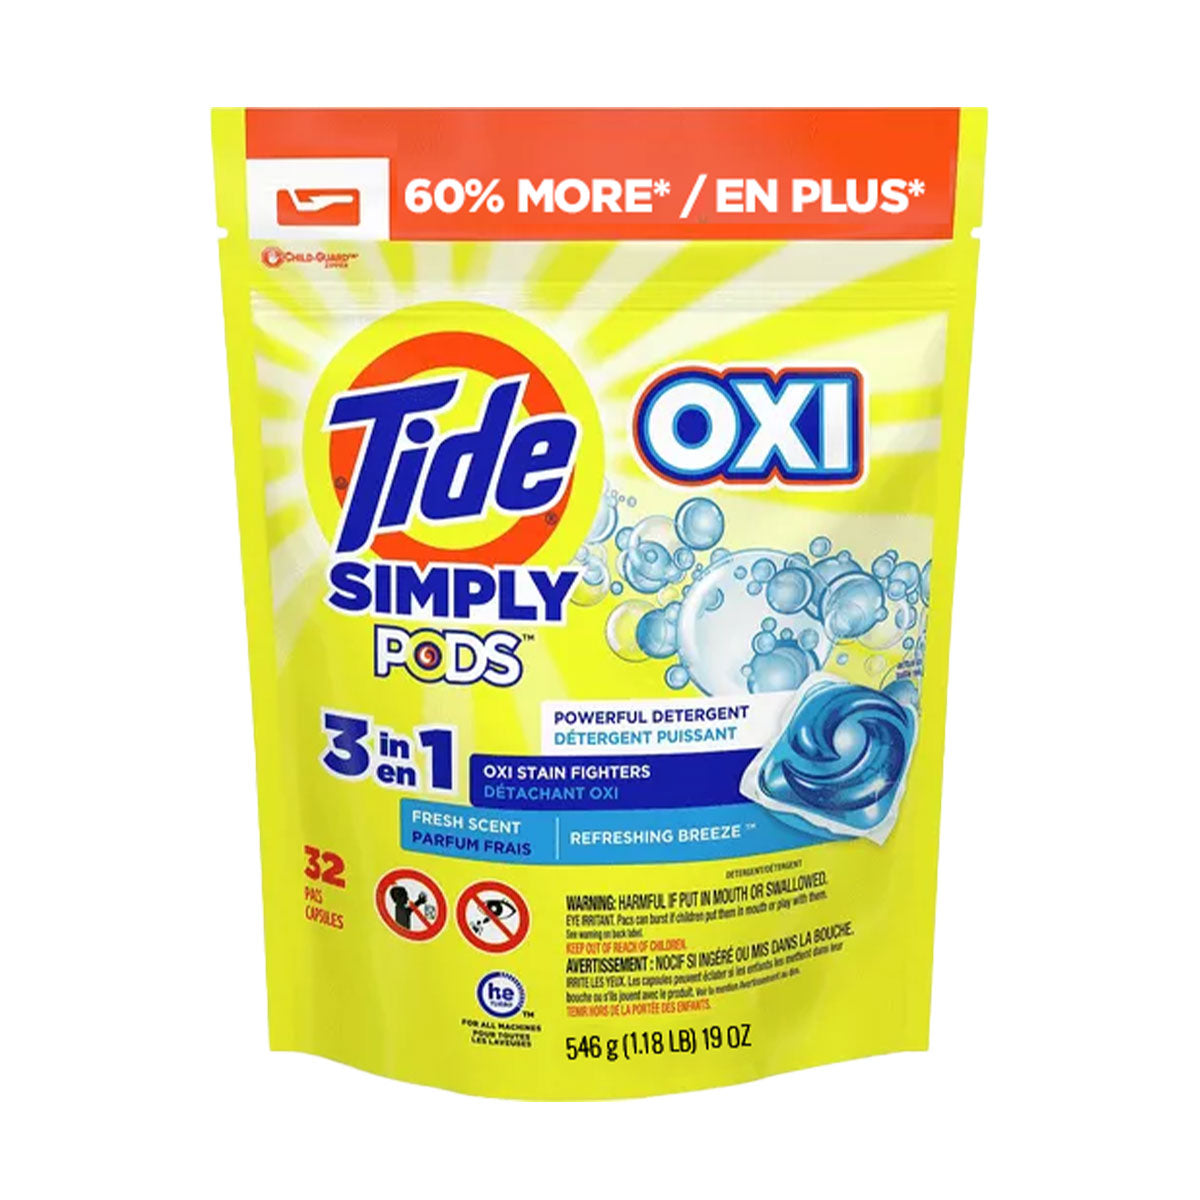 Detergente para ropa en cápsulas Tide PODS Simply OXI 3 en 1 (32 cápsulas)